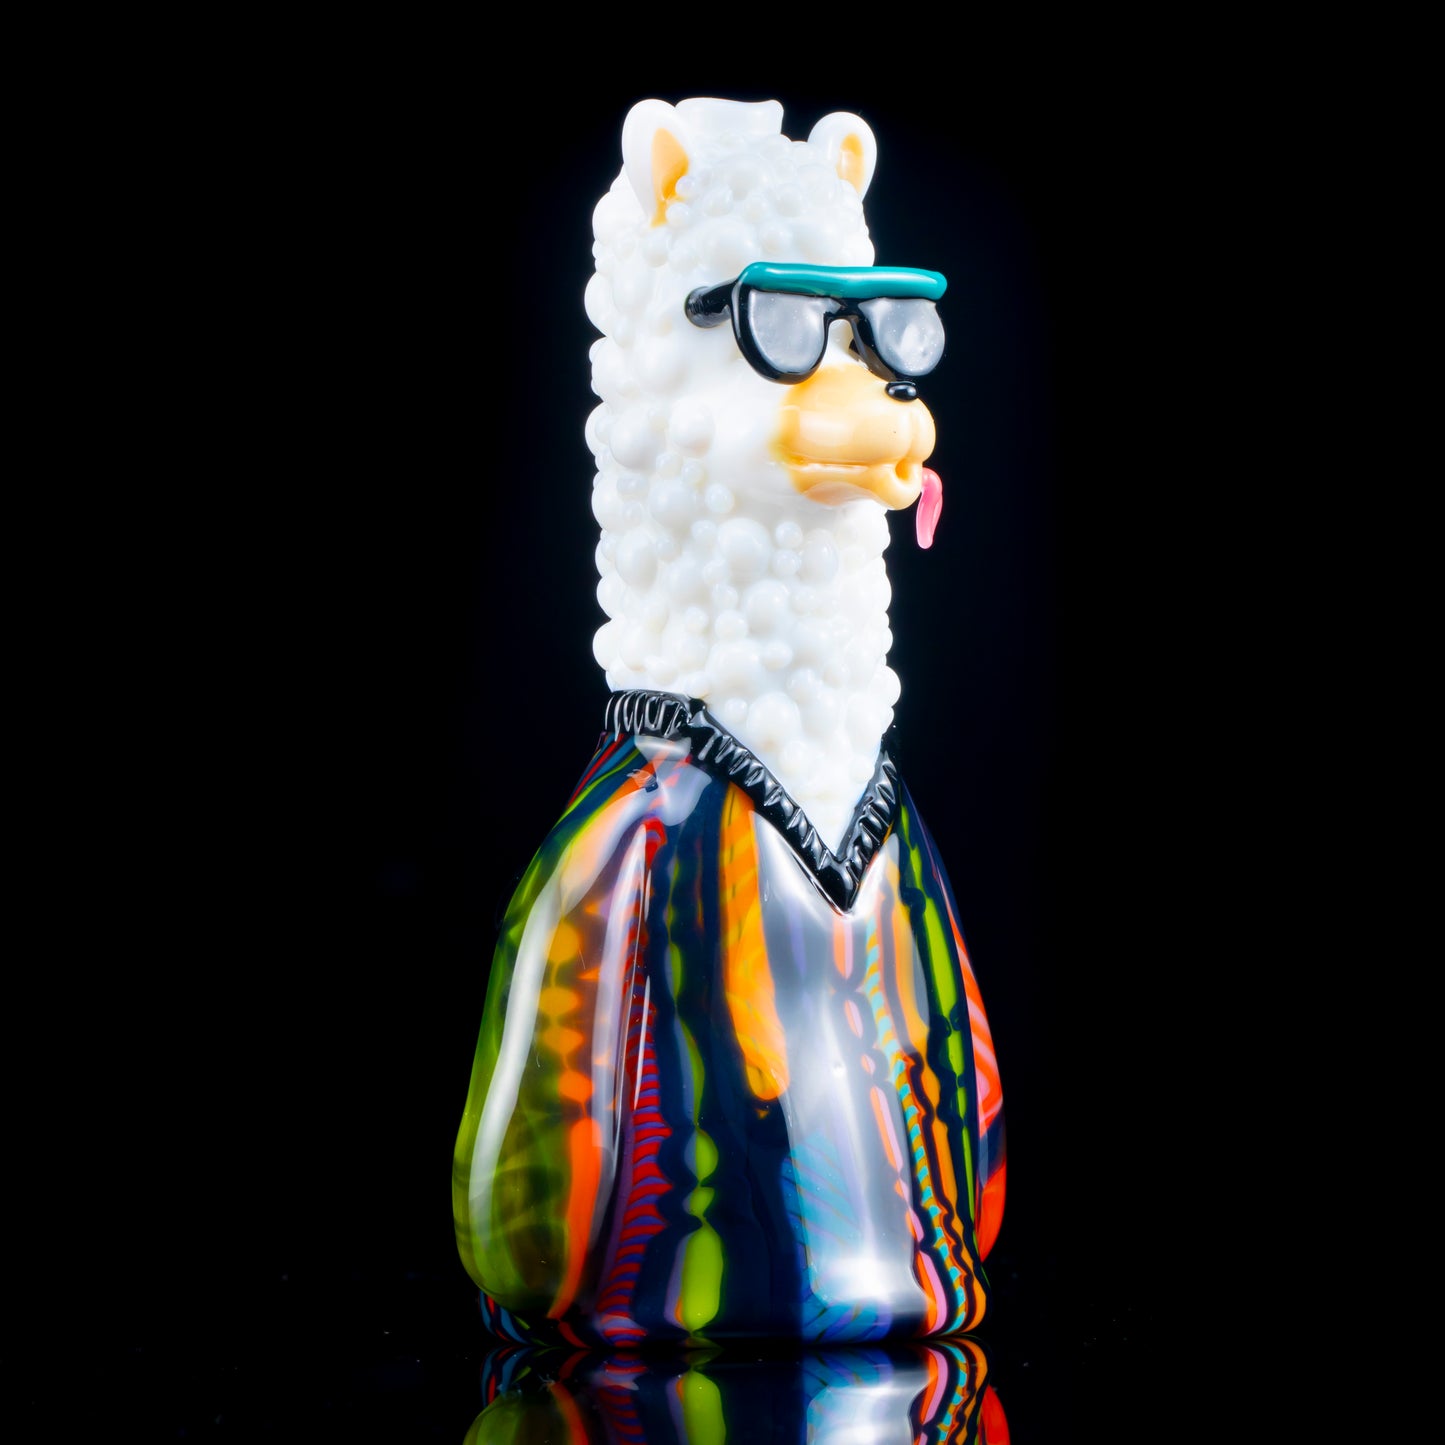 Llama Rig by Hendy Glass x Trip A (Coogi Zoo)